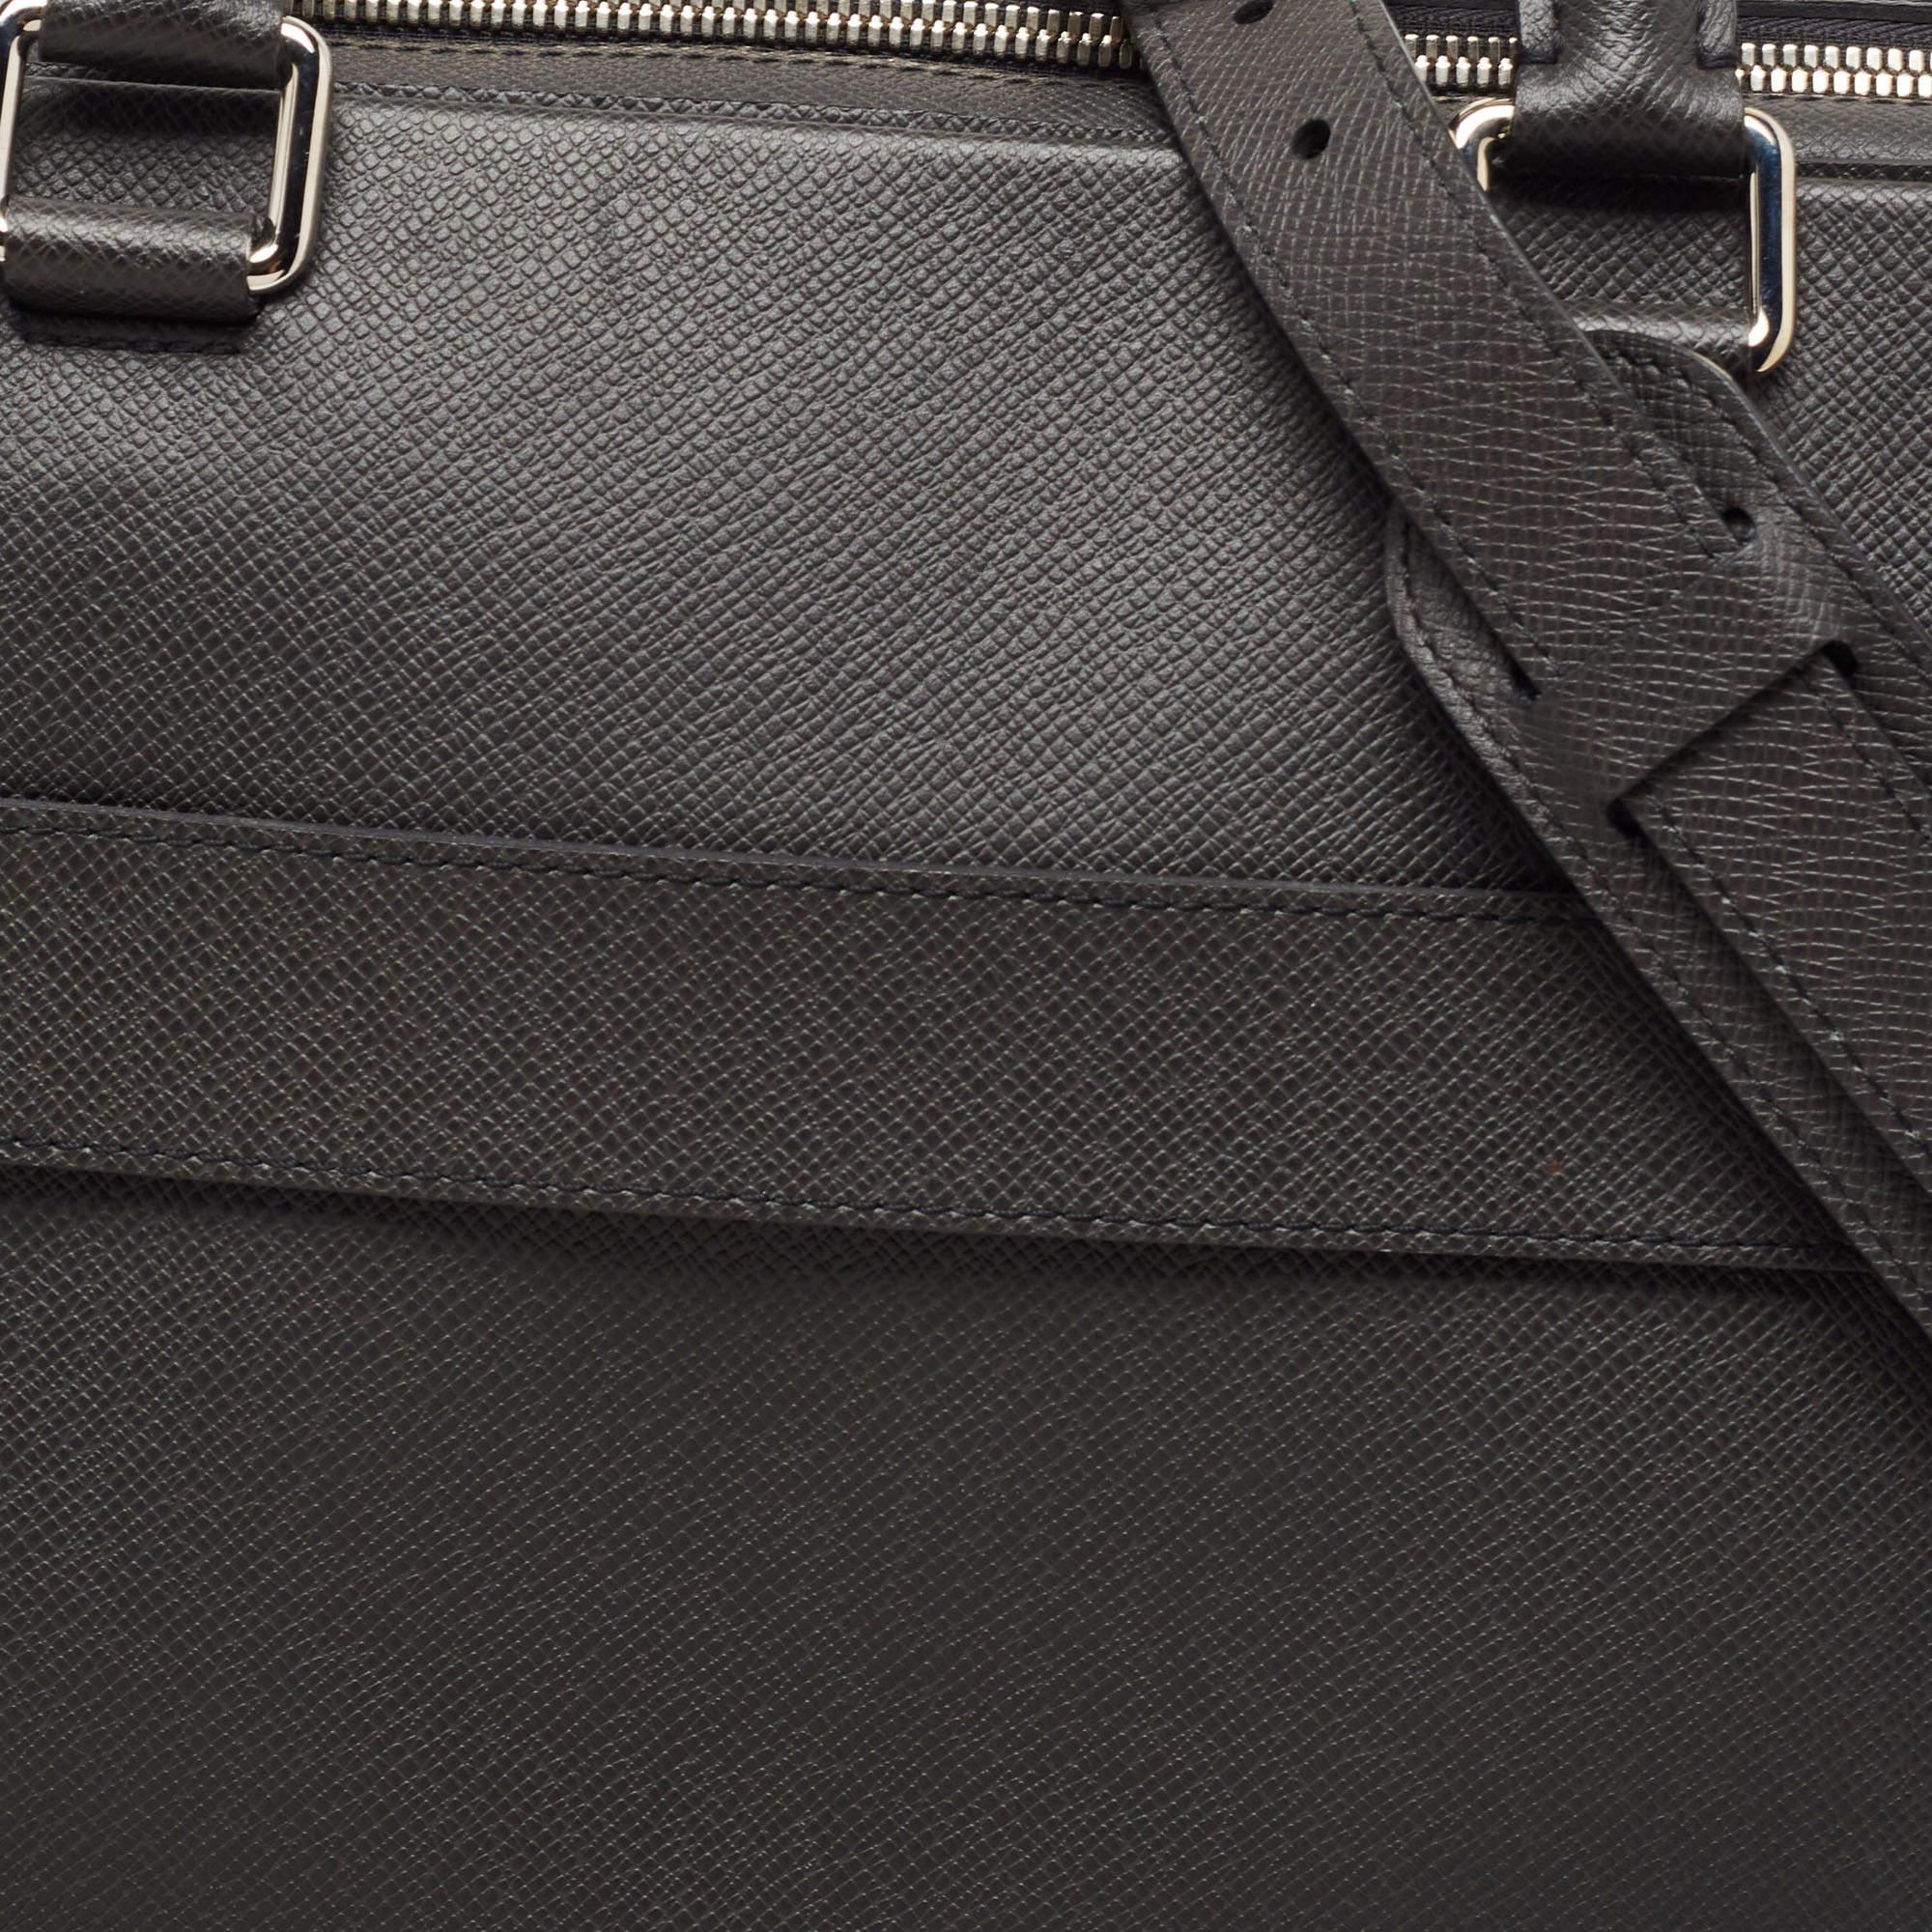 Men's Louis Vuitton Black Taiga Leather Documents Briefcase Bag